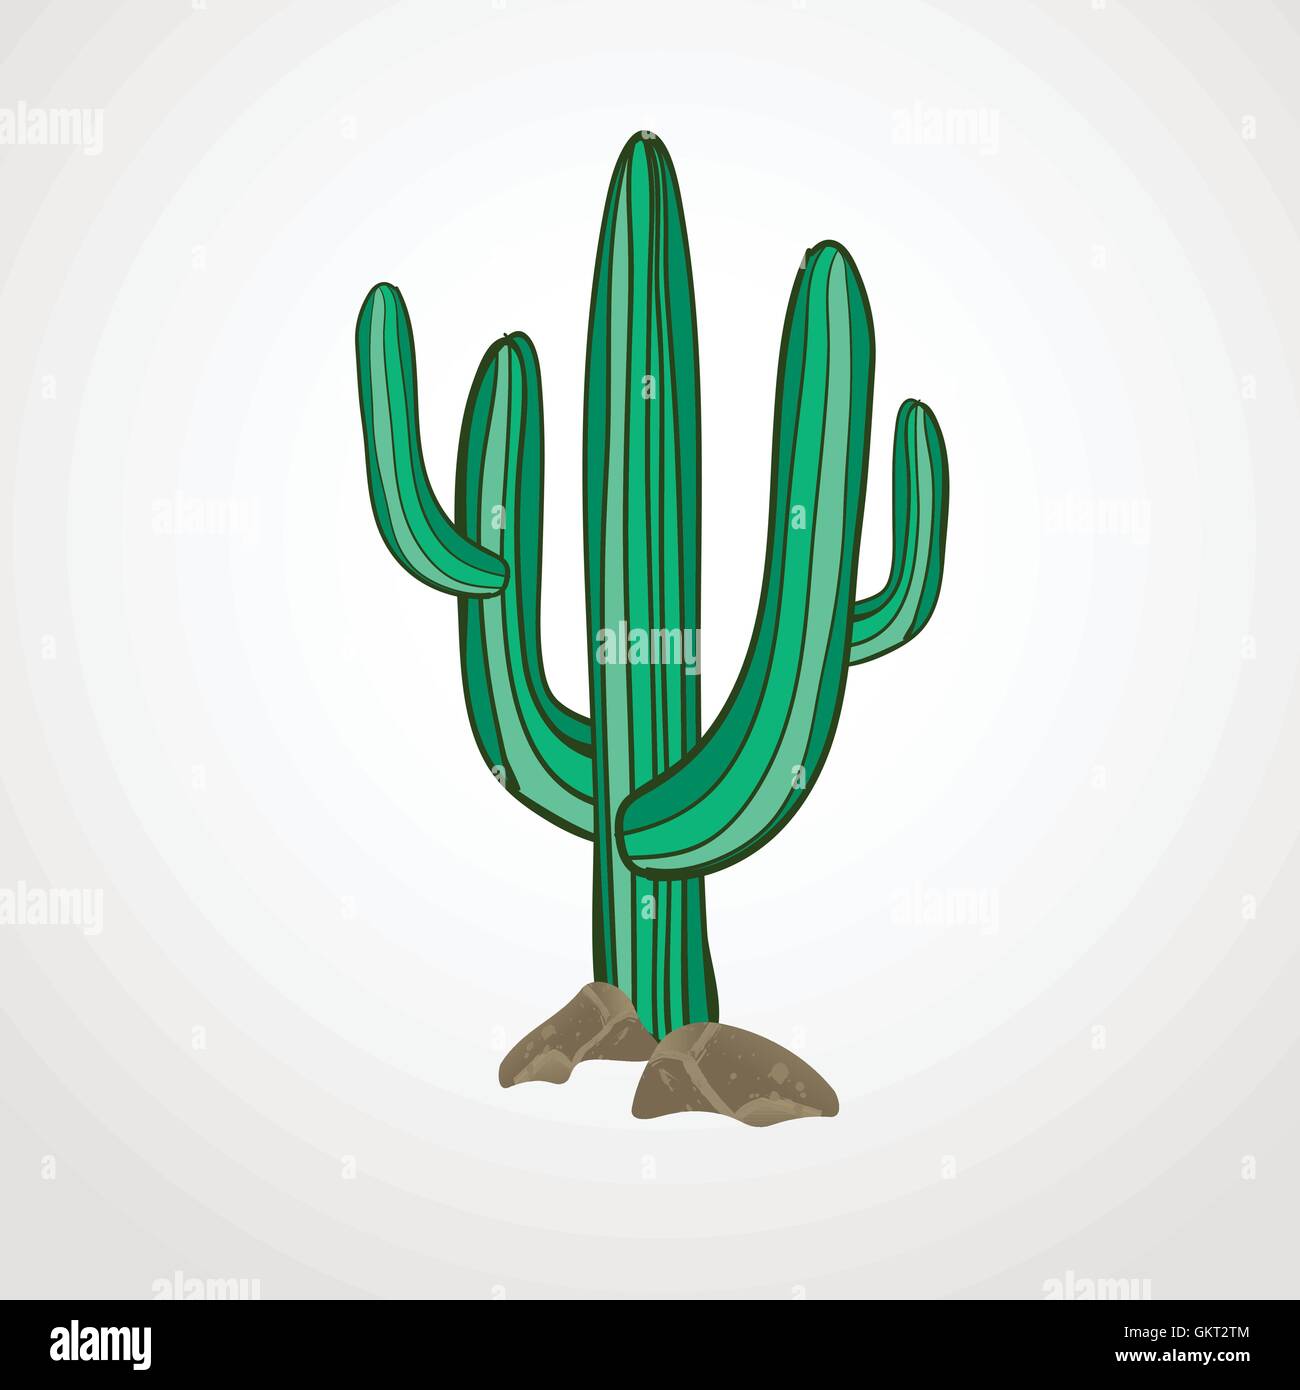 Vektor-Illustration von isolierten Kaktus auf weißem Hintergrund. Wild-West oder Cowboy Stilsymbol Stock Vektor